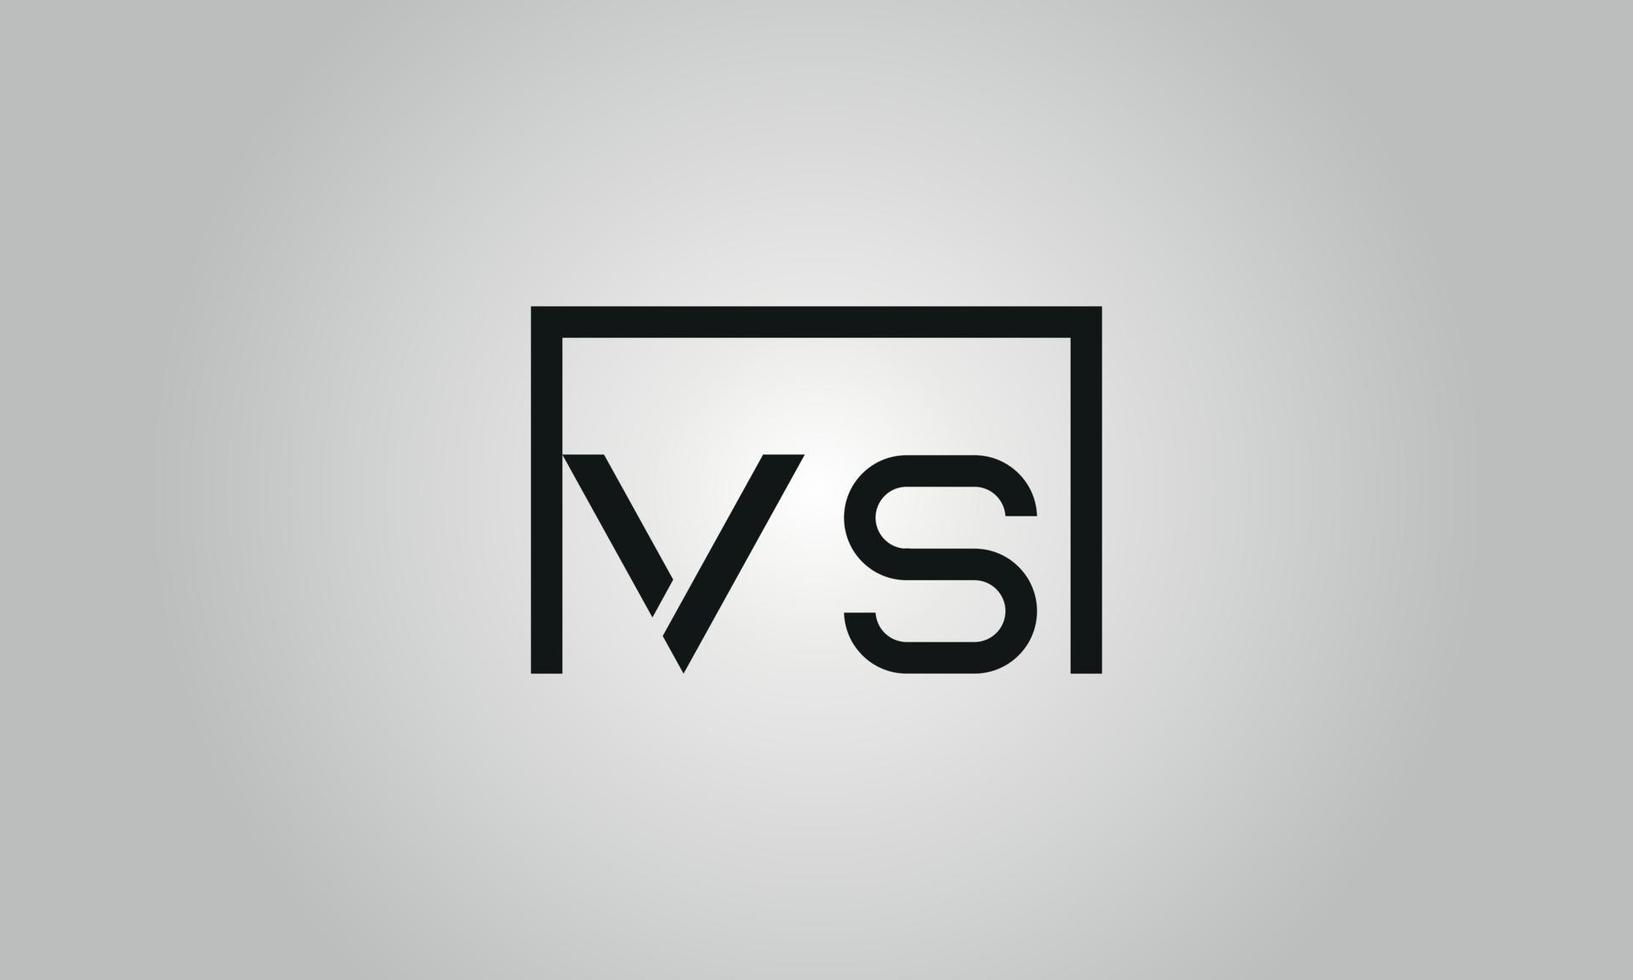 diseño de letra vs logotipo. vs logo con forma cuadrada en colores negros vector plantilla de vector libre.